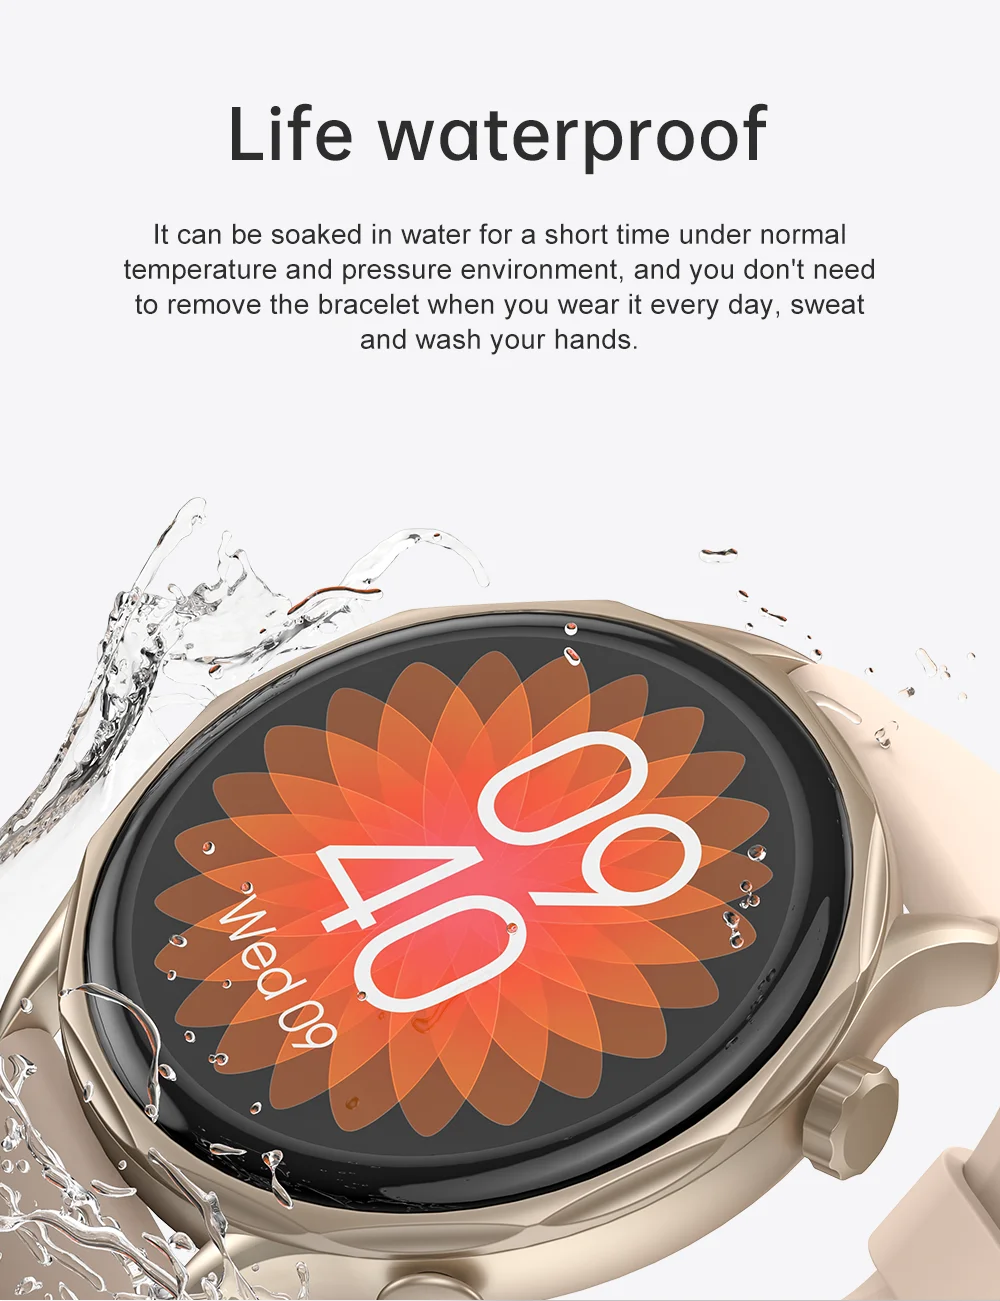 Reloj de pulsera para mujer con monitor de ritmo cardíaco Smartwatch (blanco )Reloj de pulsera para mujer con monitor de ritmo cardíaco Smartwatch ( blanco)-- Sincero Electrónica